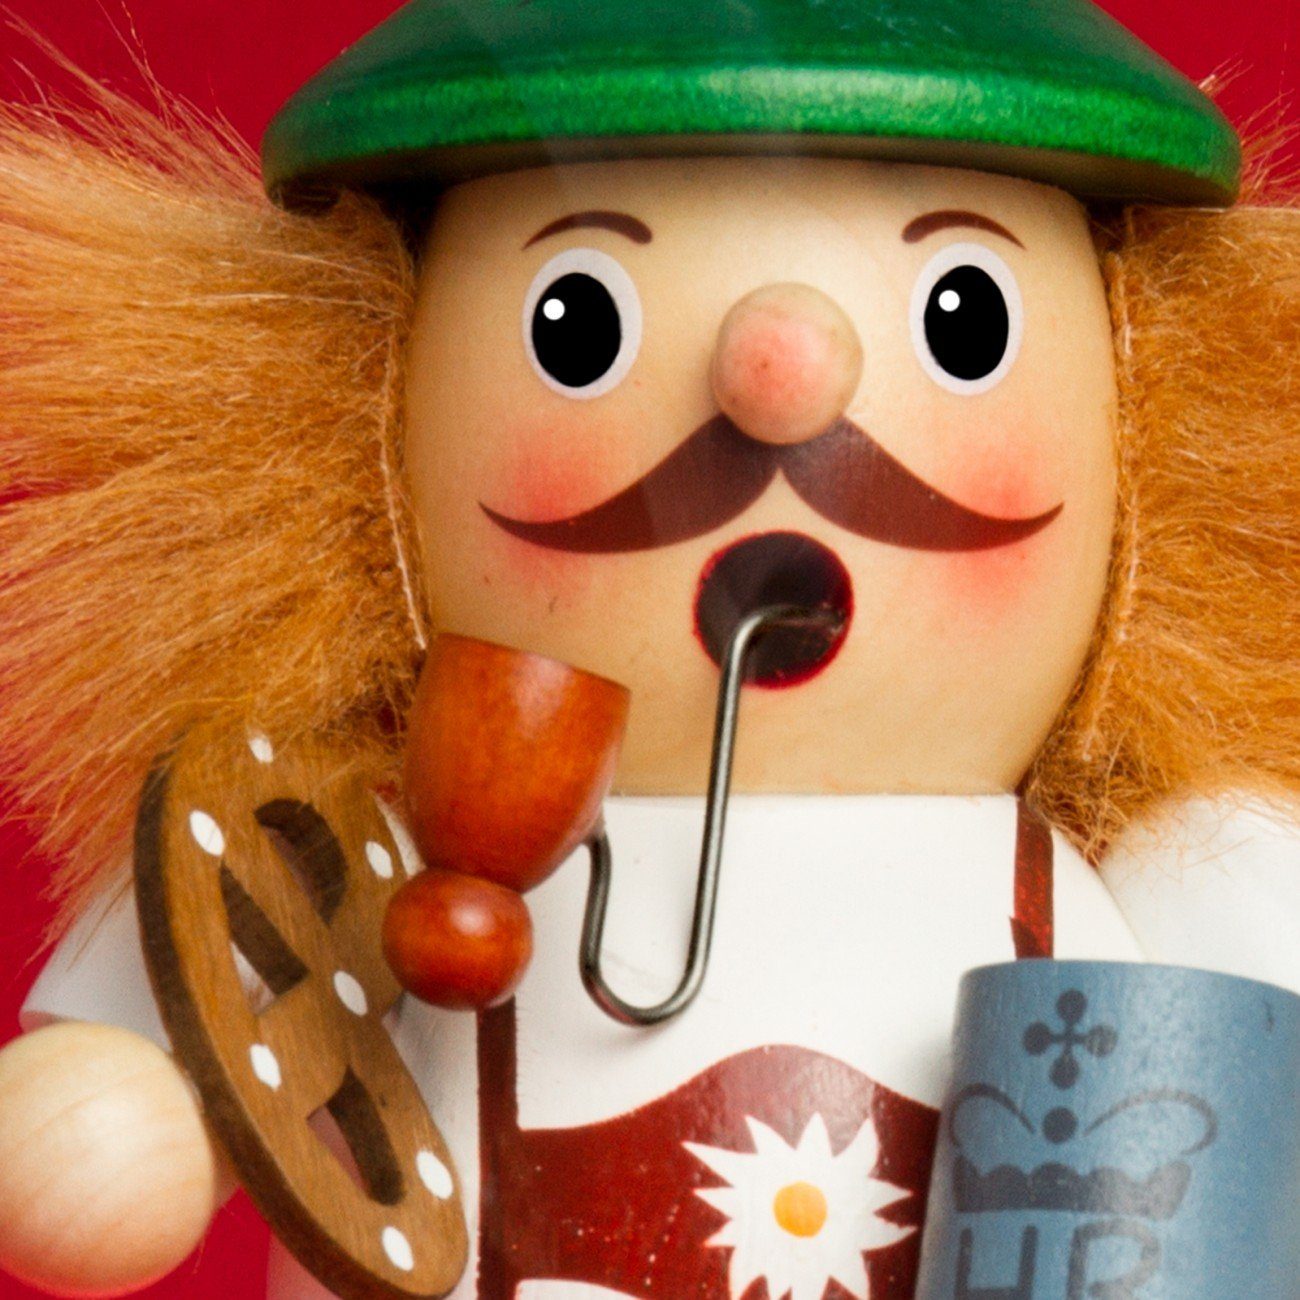 SIKORA Weihnachtsfigur RM-B Räuchermännchen aus Biertrinker Holz weiß/braun verschiedene Motive - B02